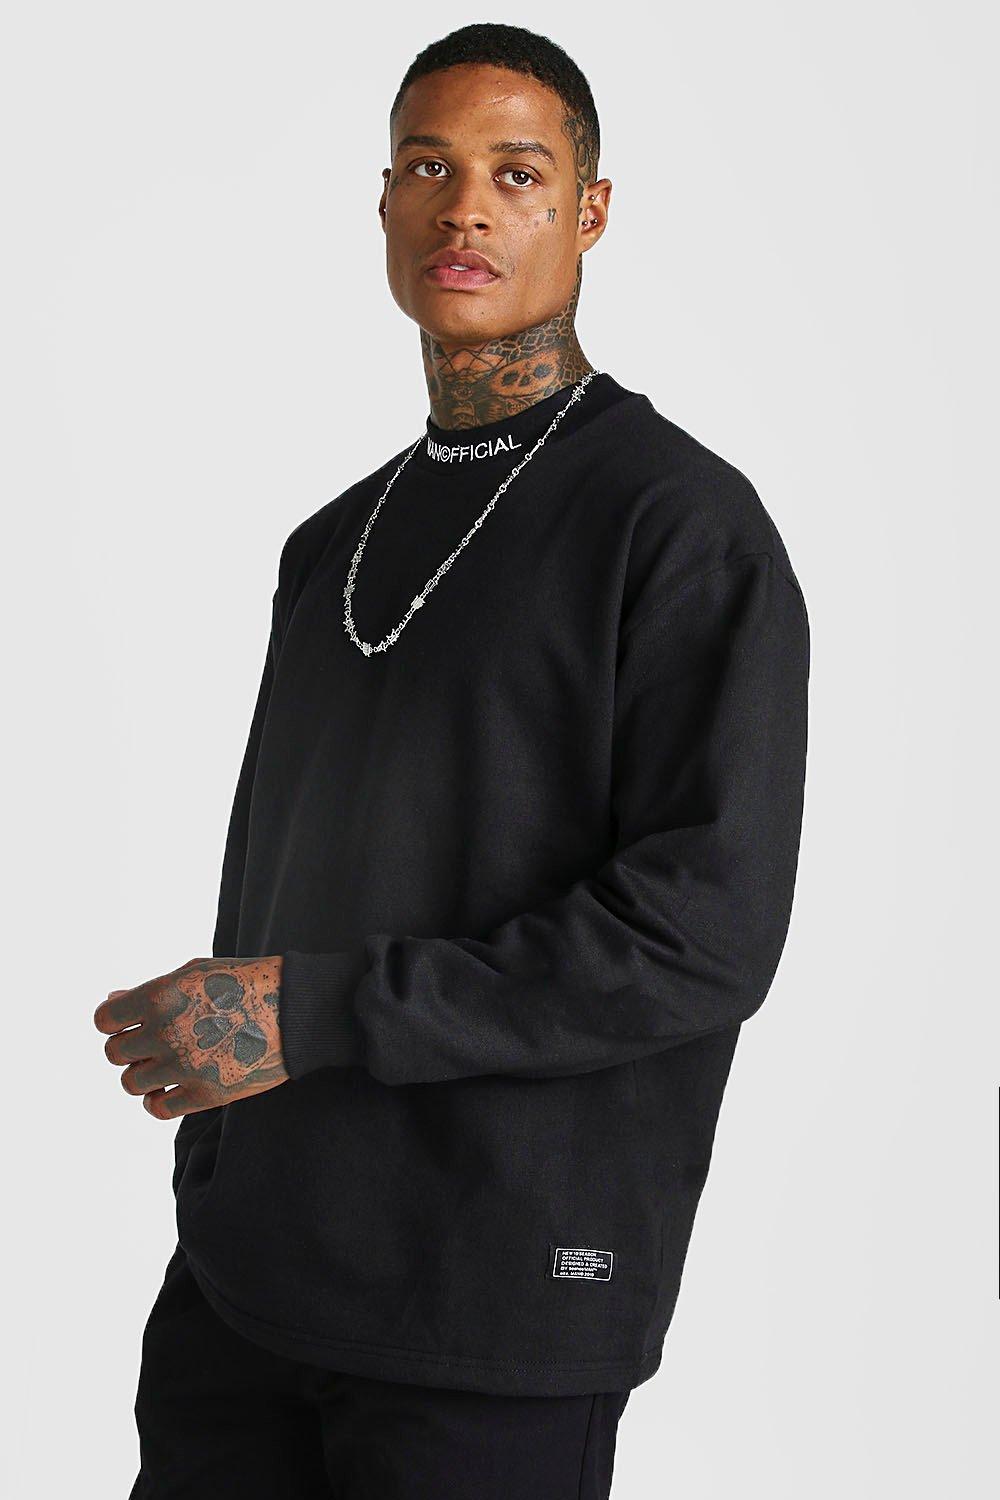 black round neck sweatshirt